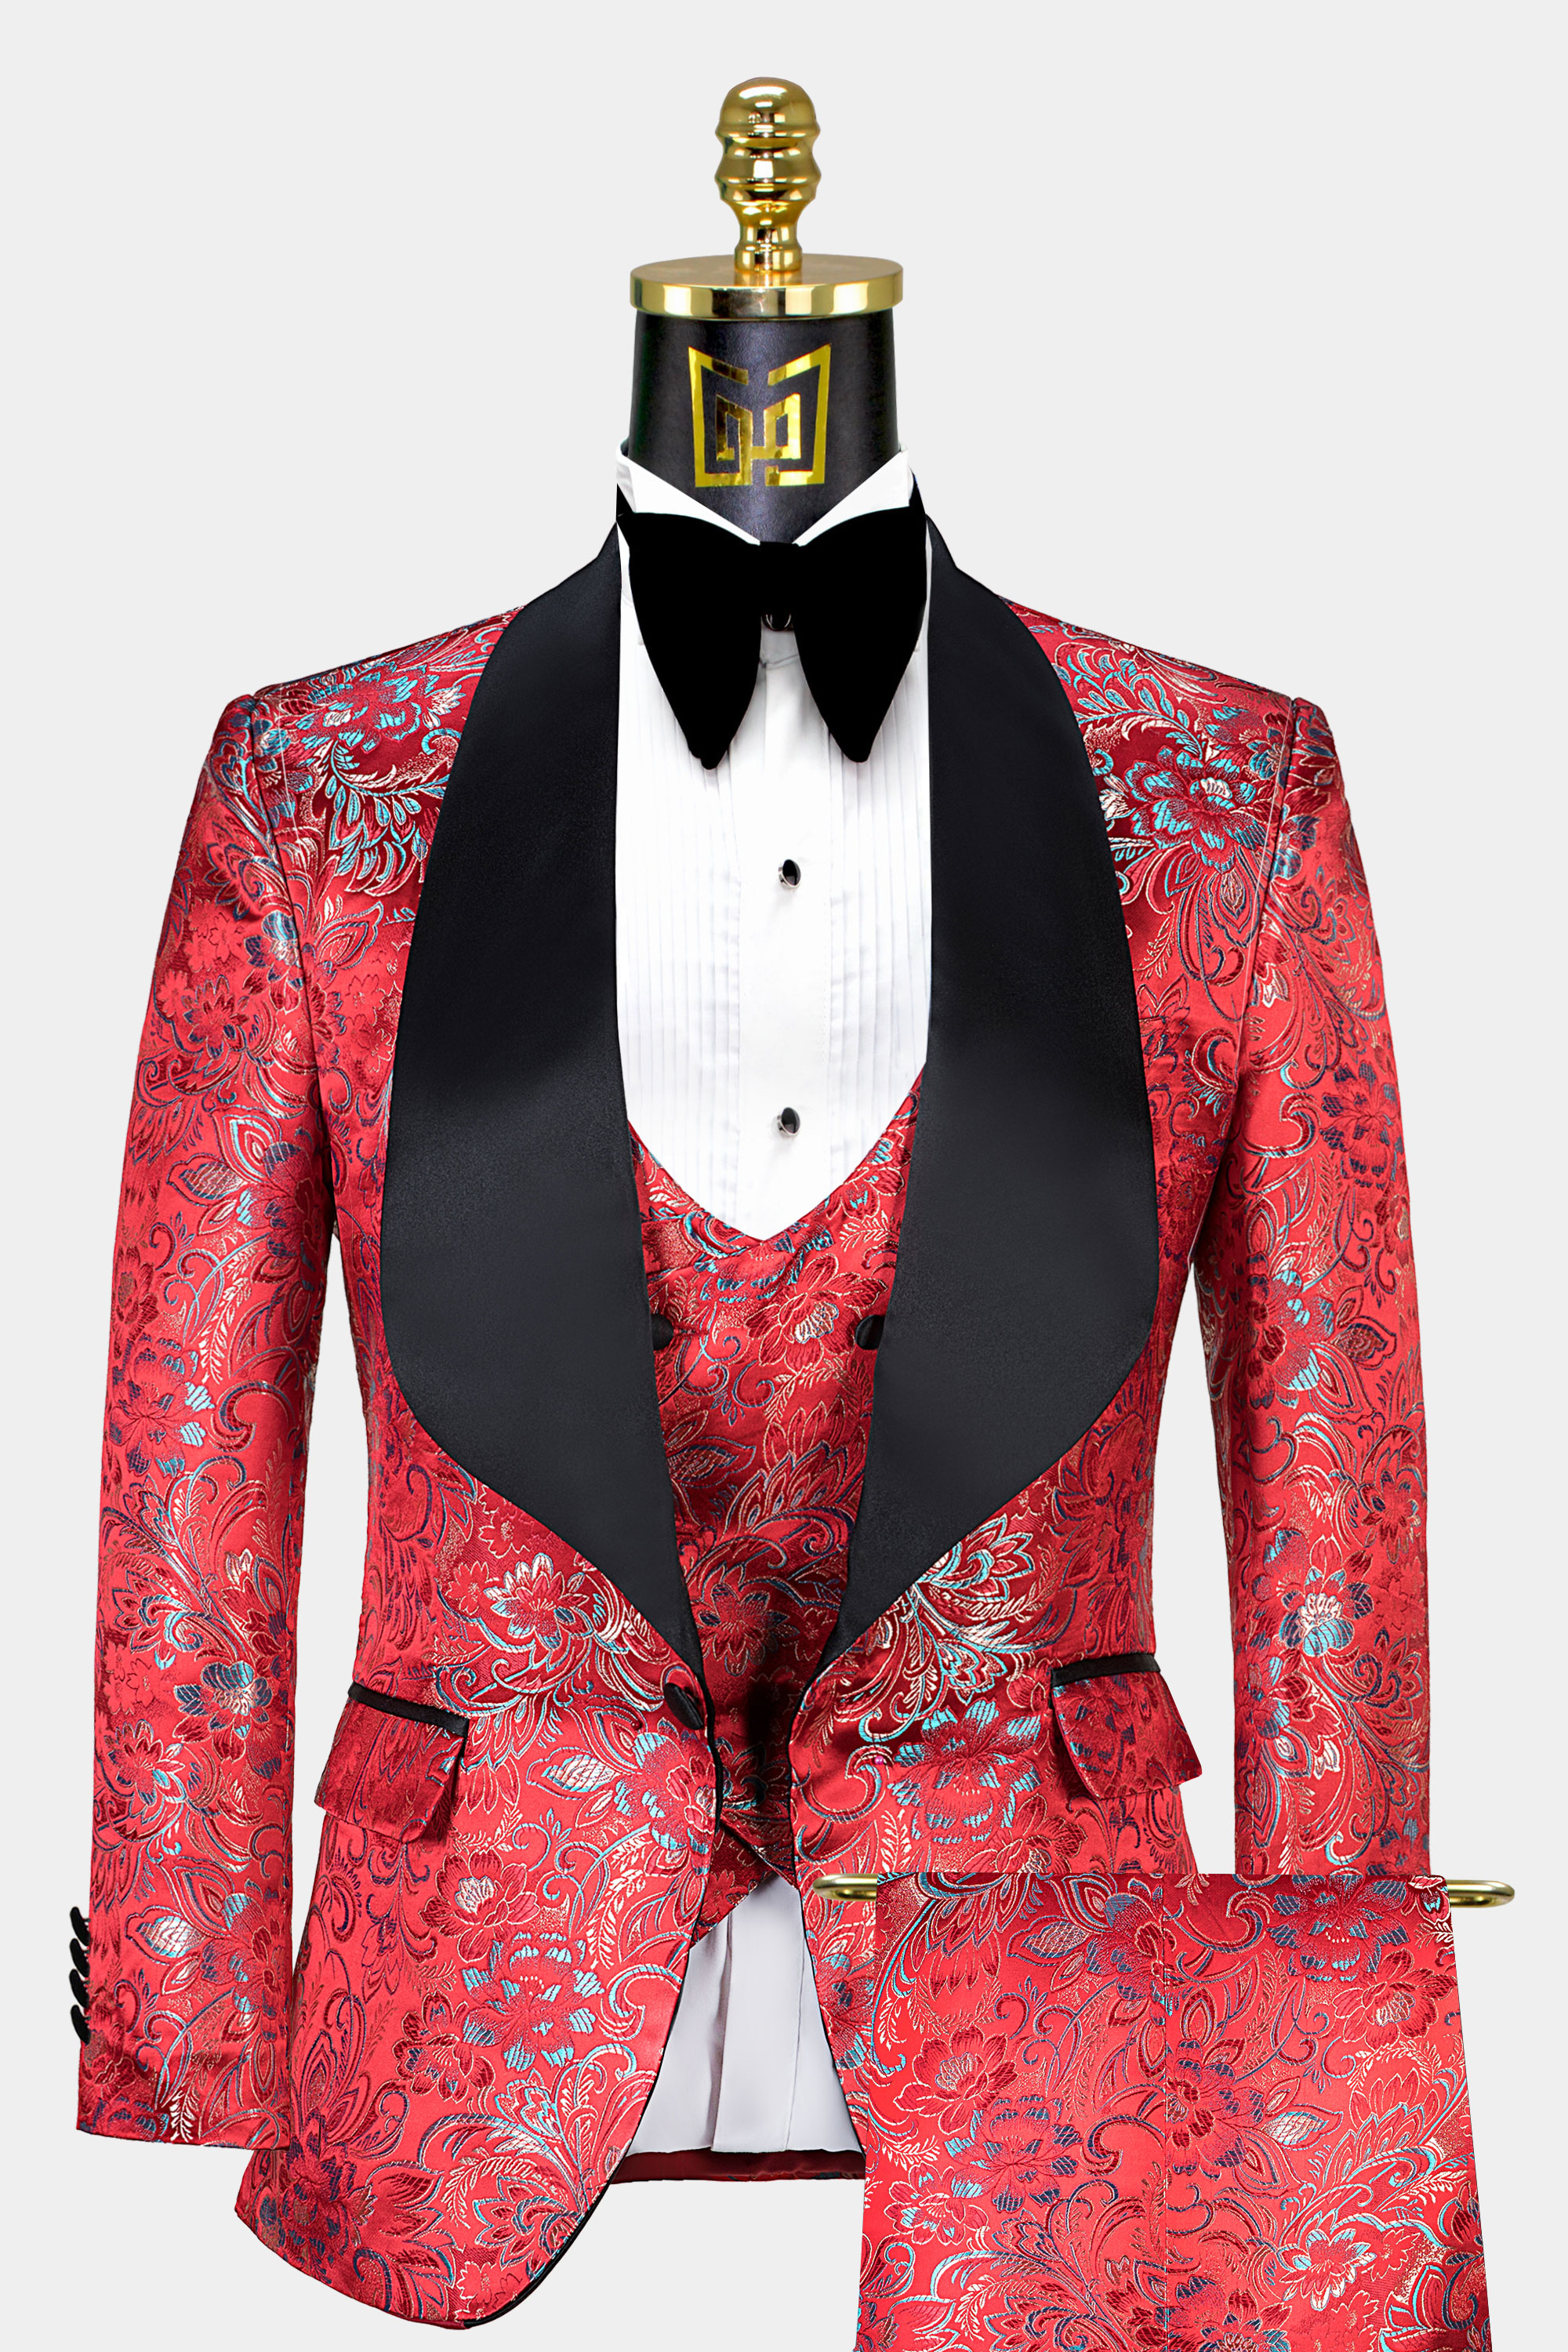 Mens-Red-Floral-Tuxedo-Groom-Wedding-Prom-Suit-For-Men-from-Gentlemansguru.com